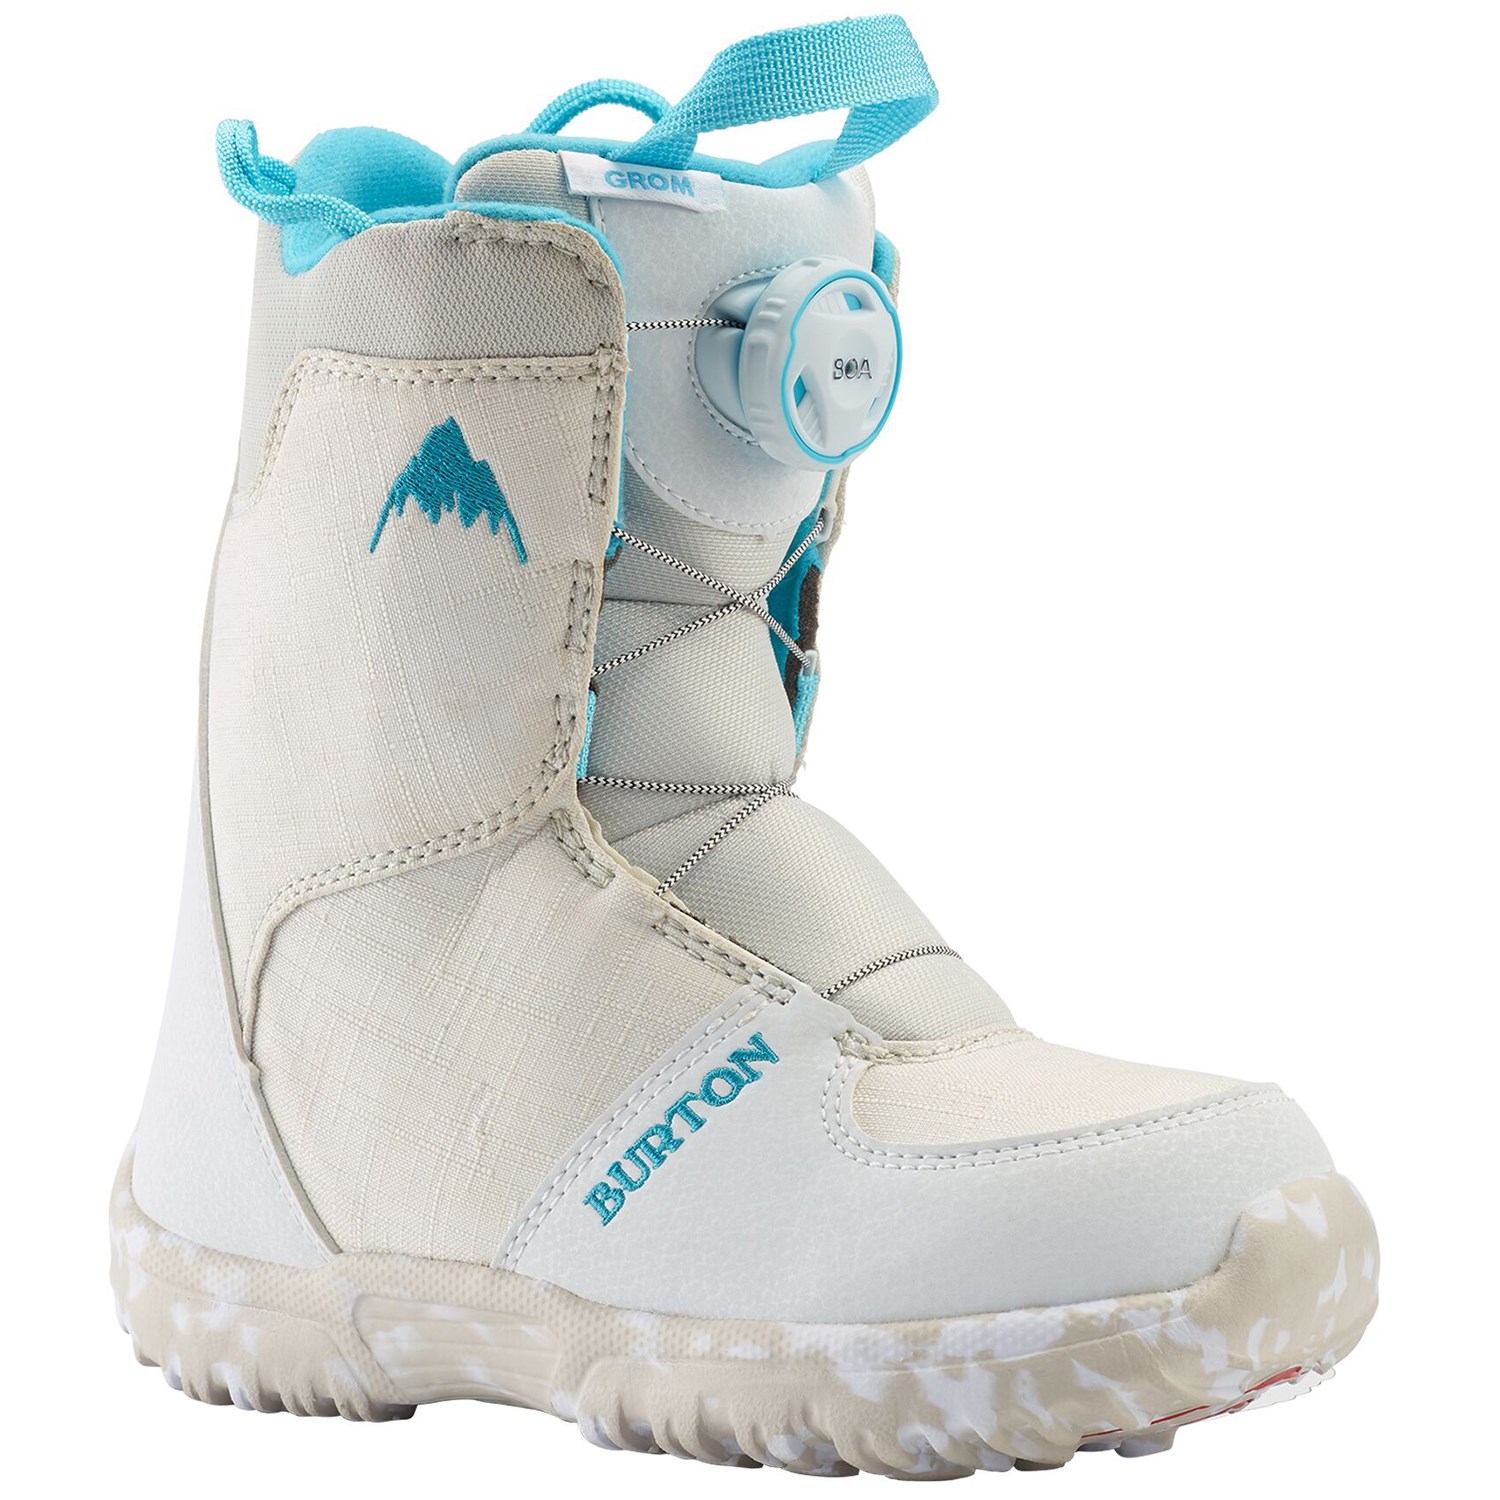 Ботинки для сноуборда Burton Grom Boa, белый ботинки для сноуборда burton grom boa цвет белый фиолетовый длина стельки 21